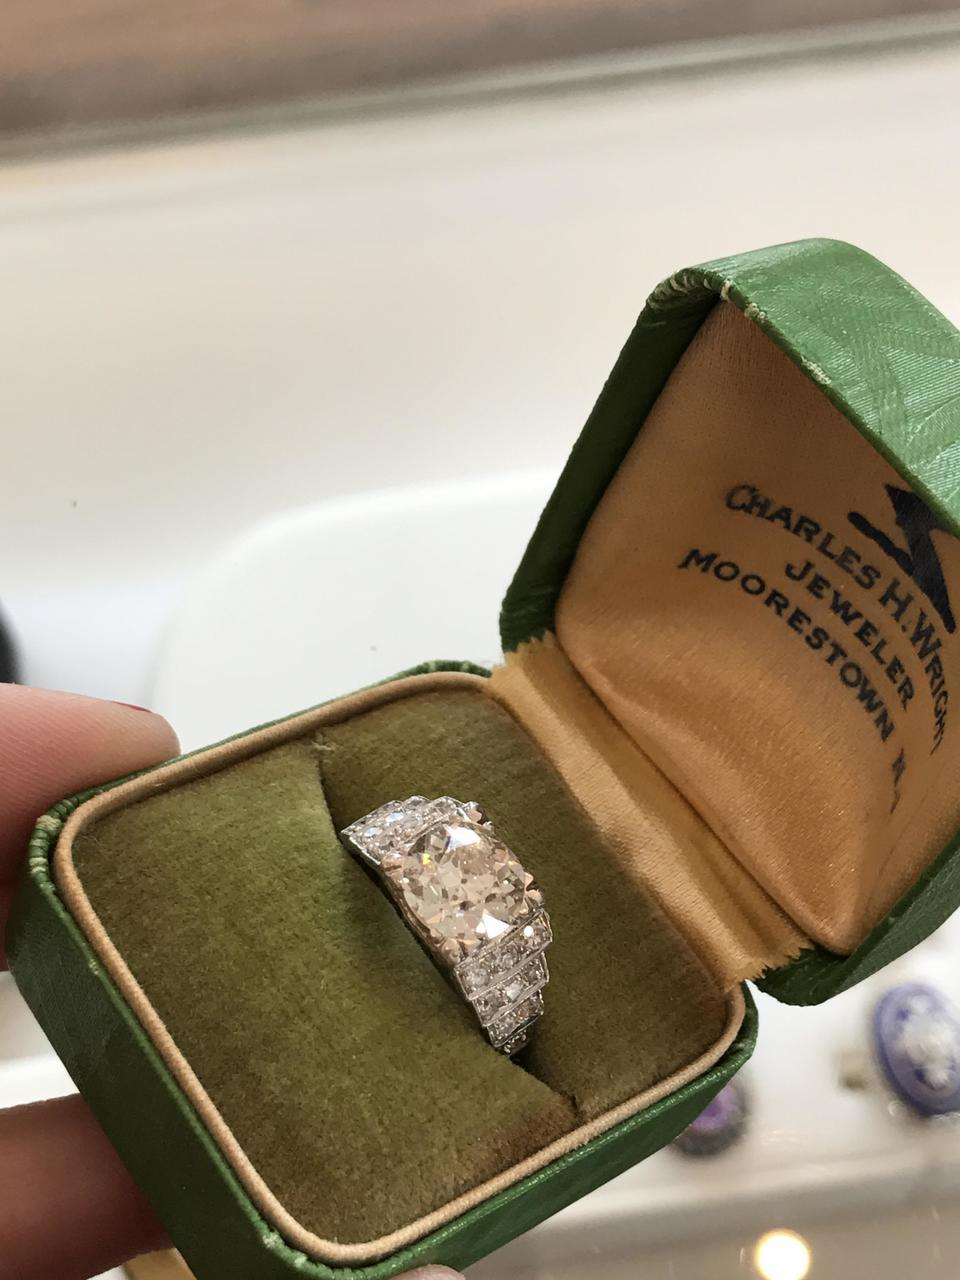 Antique Platinum Ring With A 2.15ct Diamond, Circa 1920